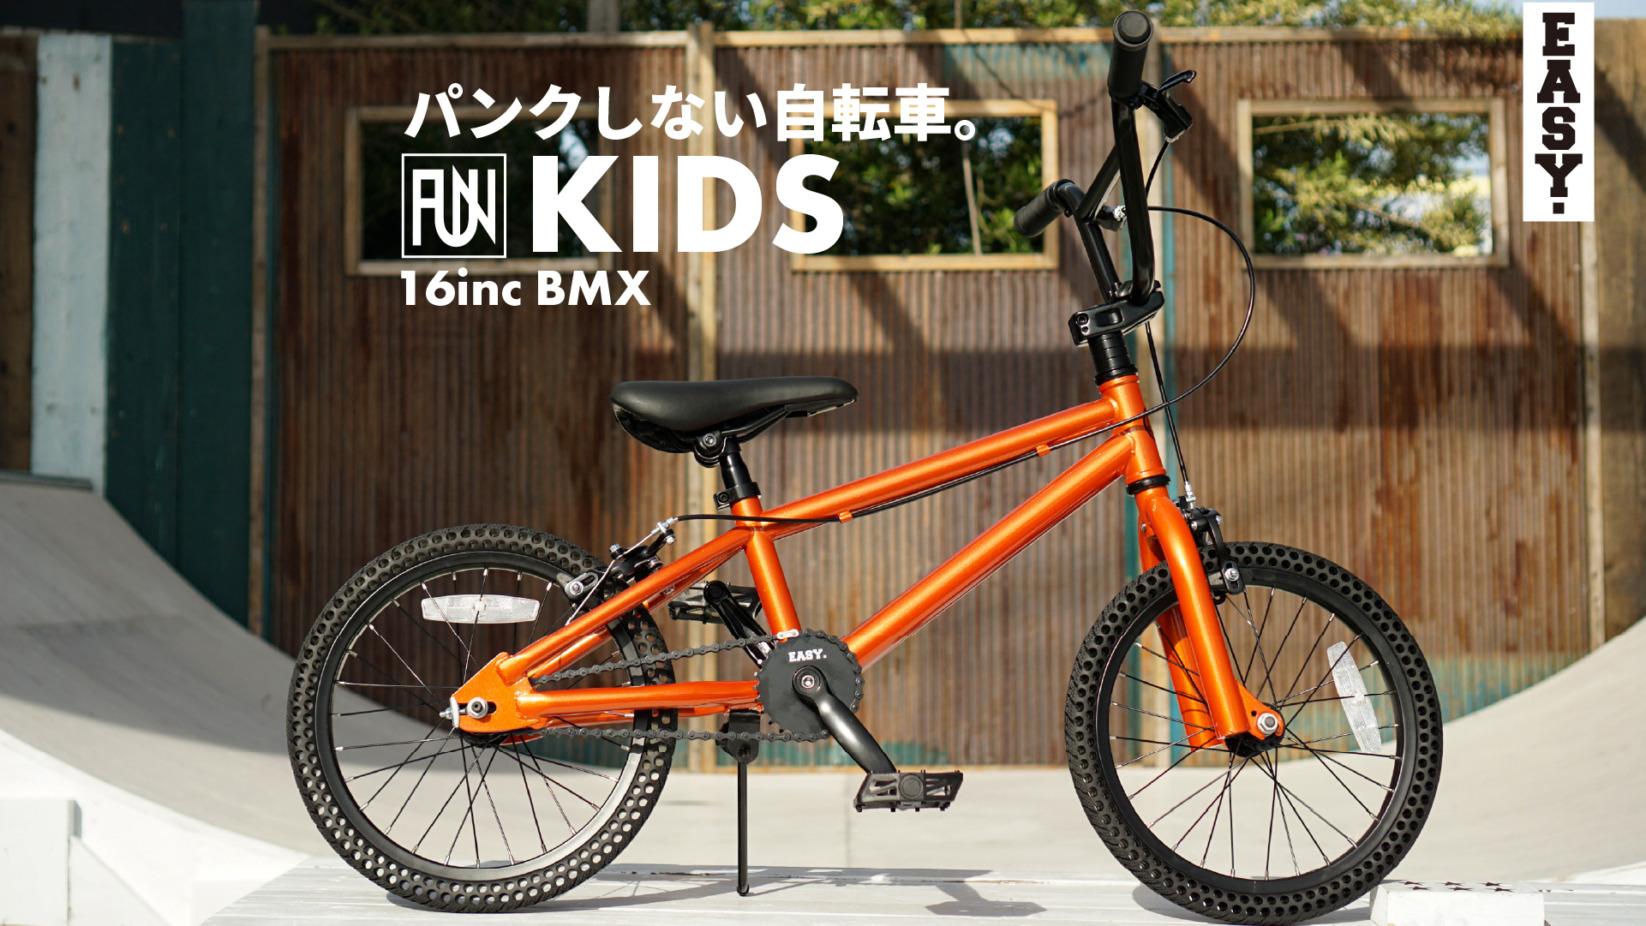 パンクしない自転車 FUN EASY KIDS BMX 16インチ キャンディーオレンジ